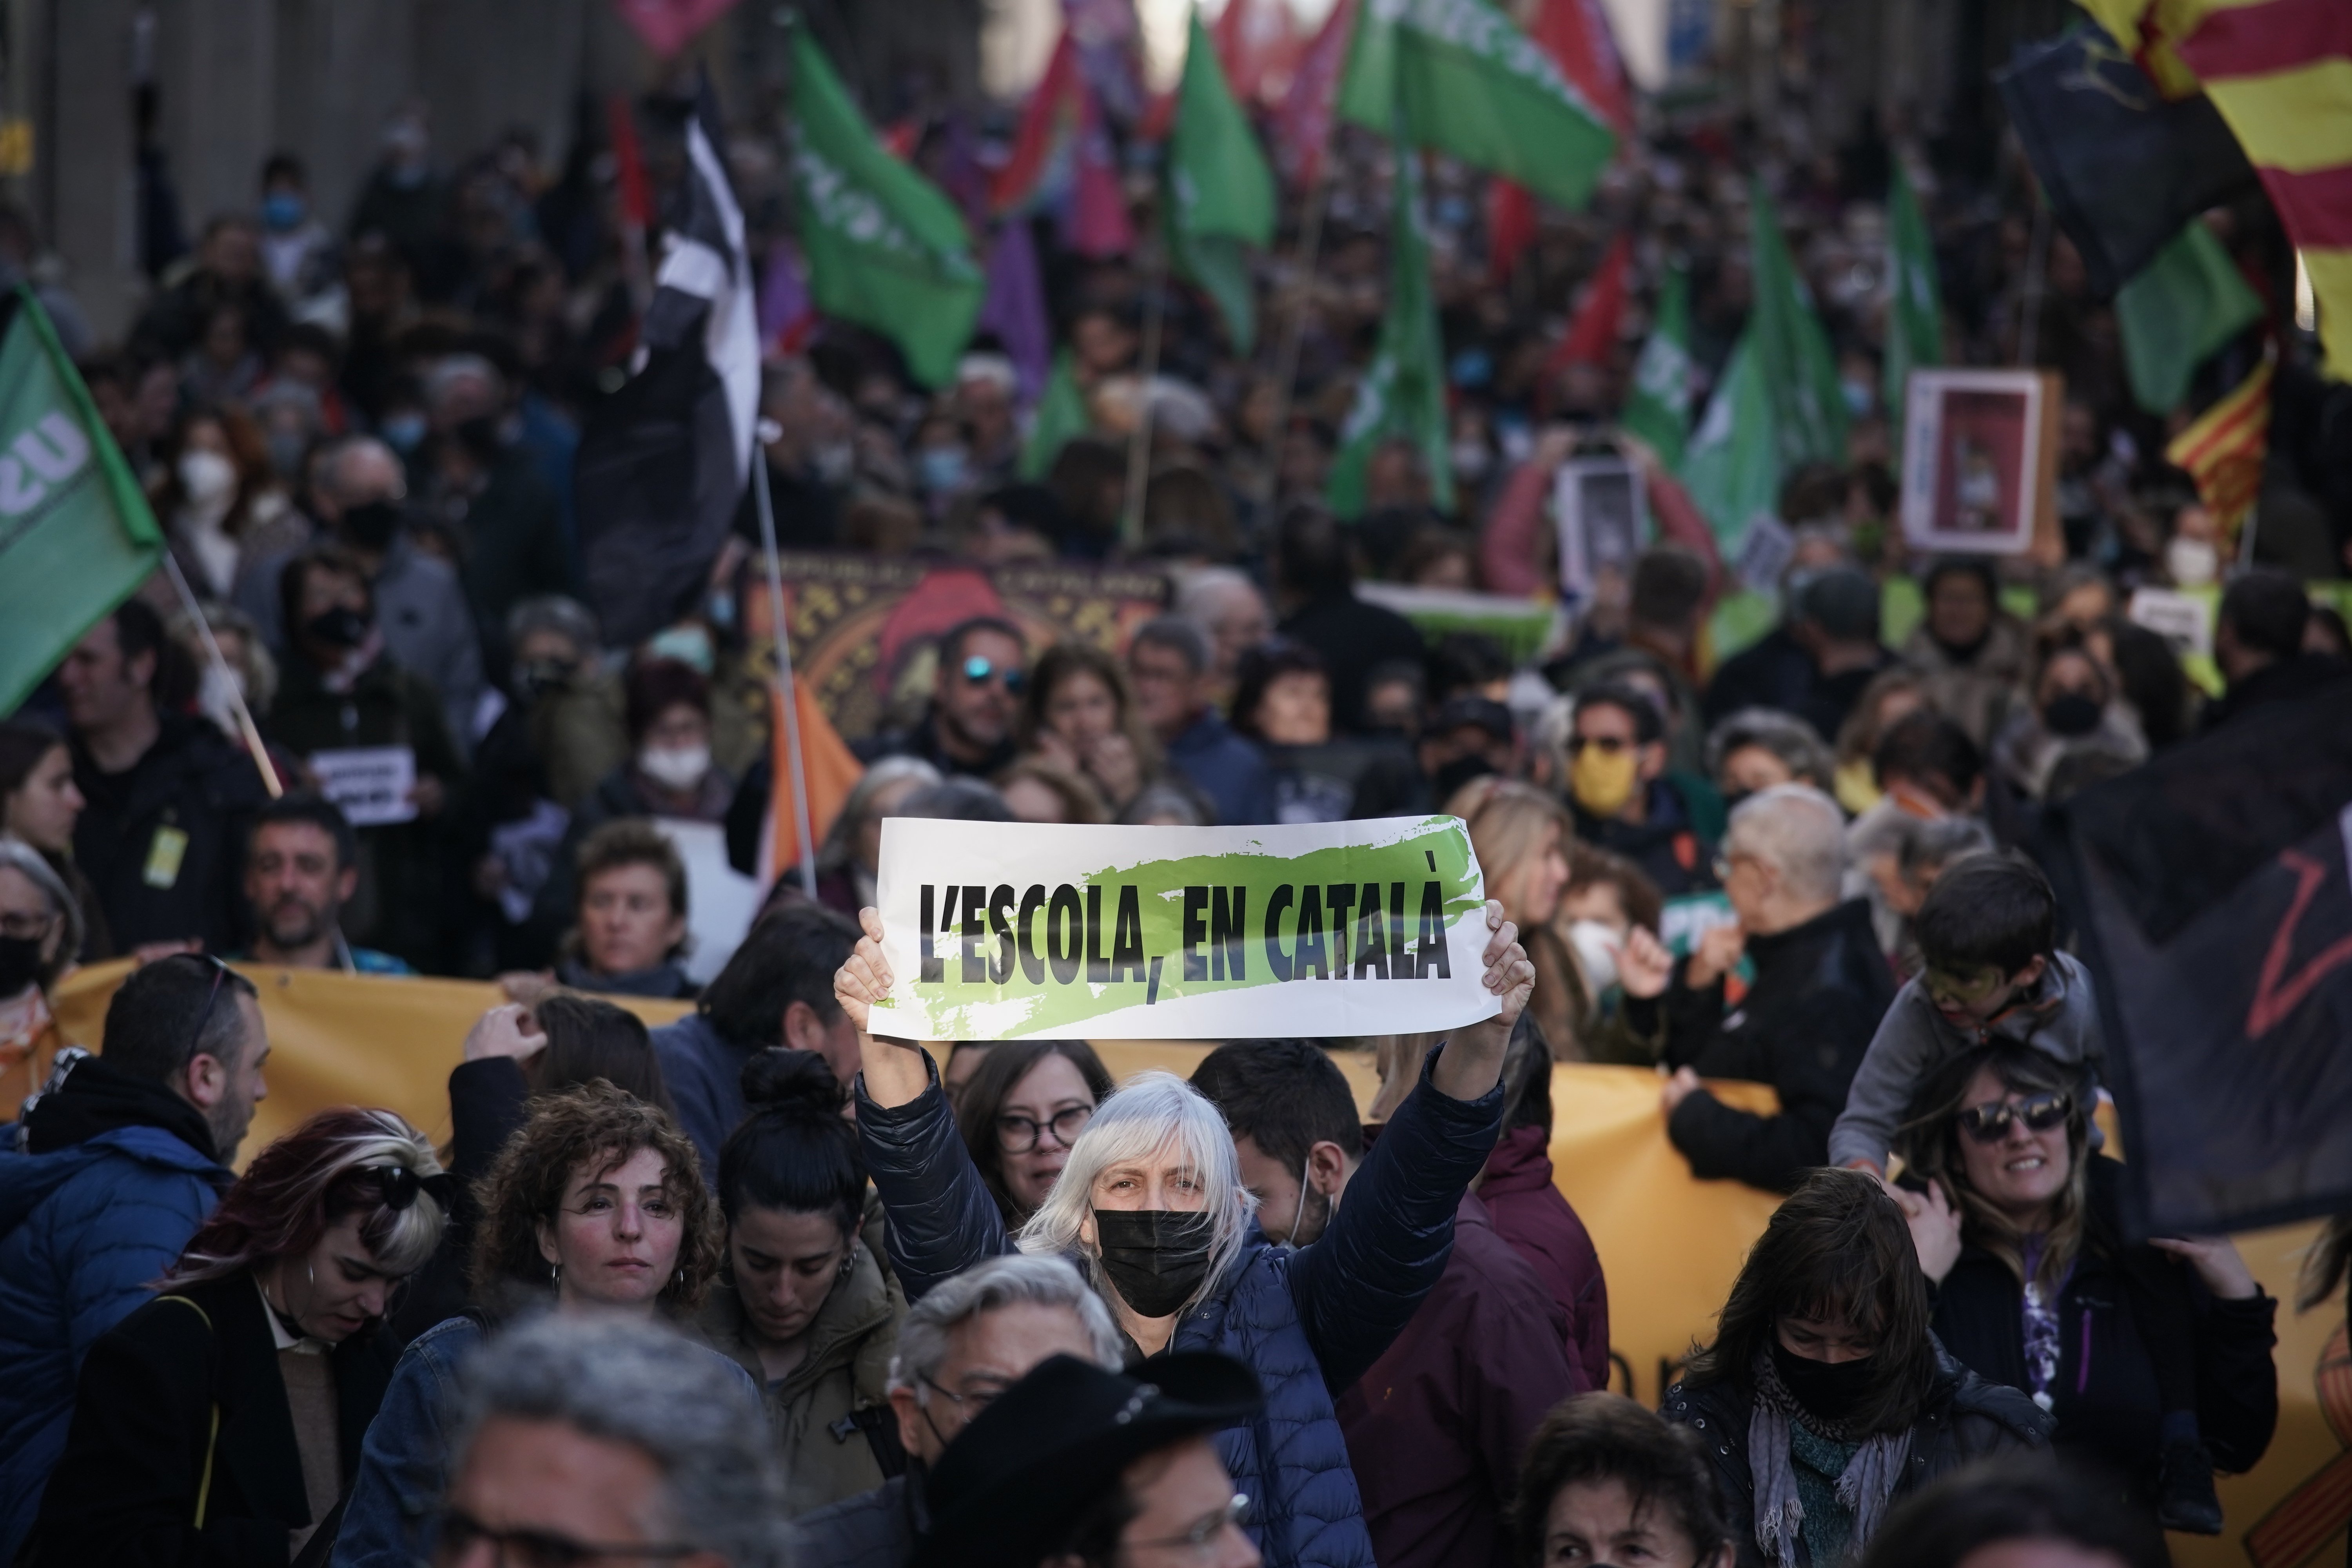 Nova mobilització per la llengua, ara contra el pacte que reconeix el castellà